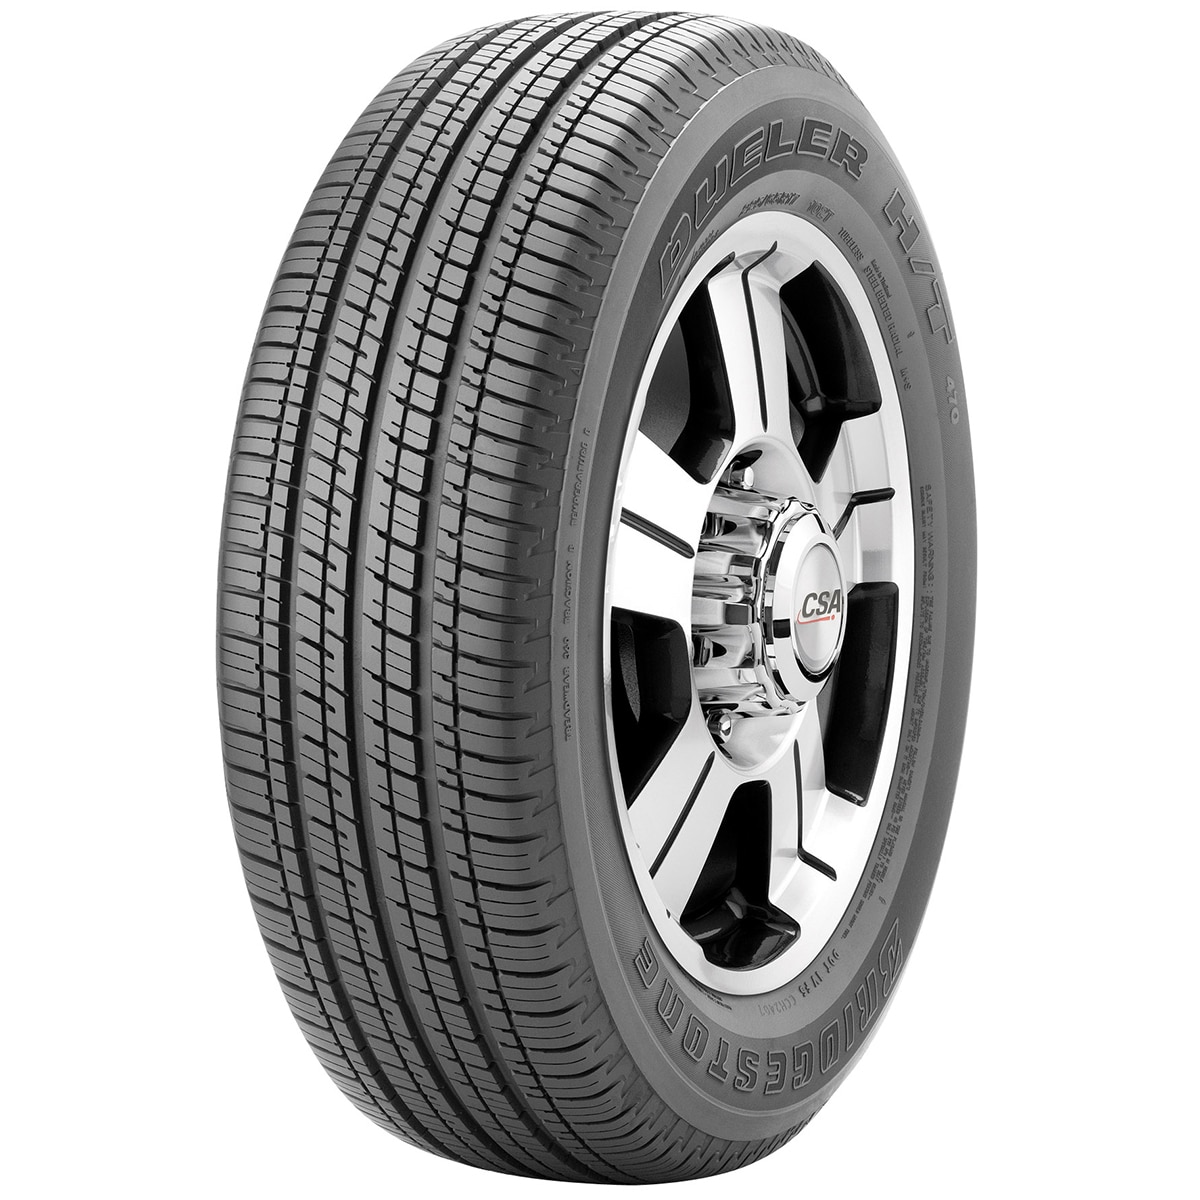 225/65R17 102T BS D470 - Tyre